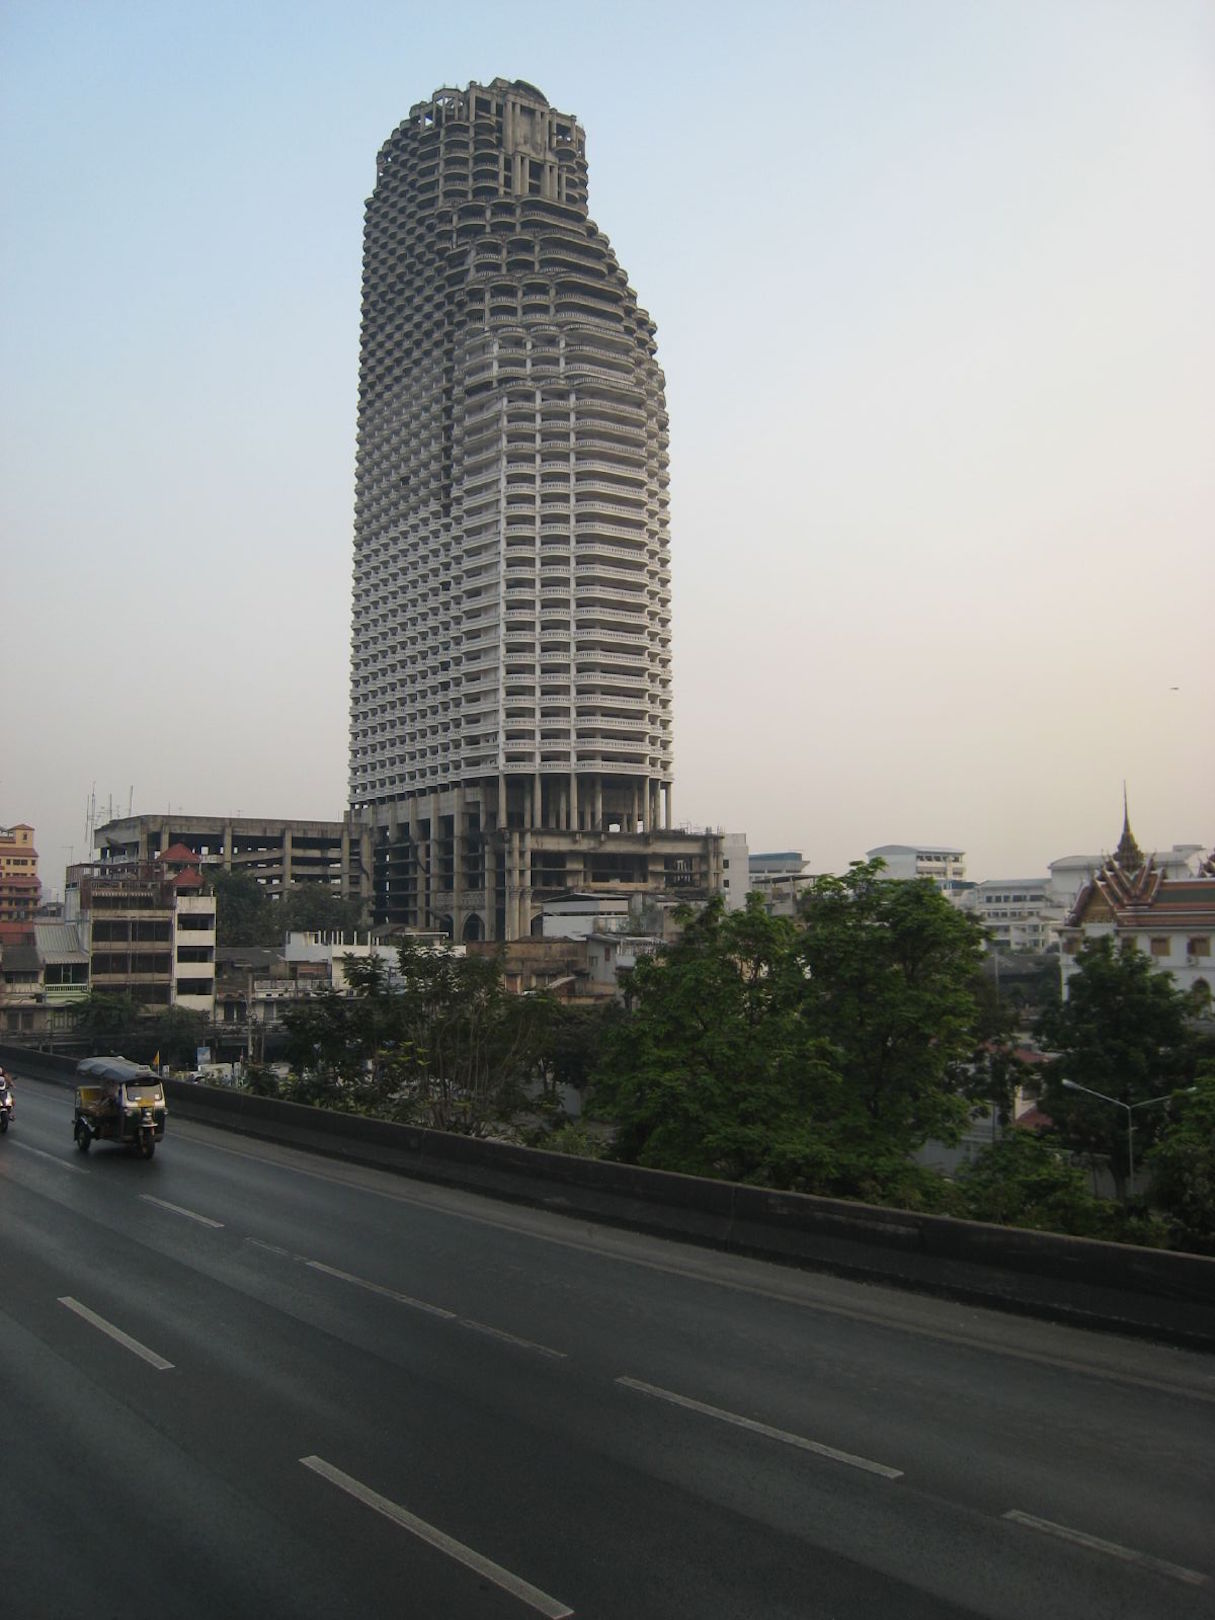 Unique tower. Небоскреб Sathorn unique Tower. Башня Саторн Бангкок. Заброшенный небоскреб в Бангкоке. Саторн Юник Тауэр.